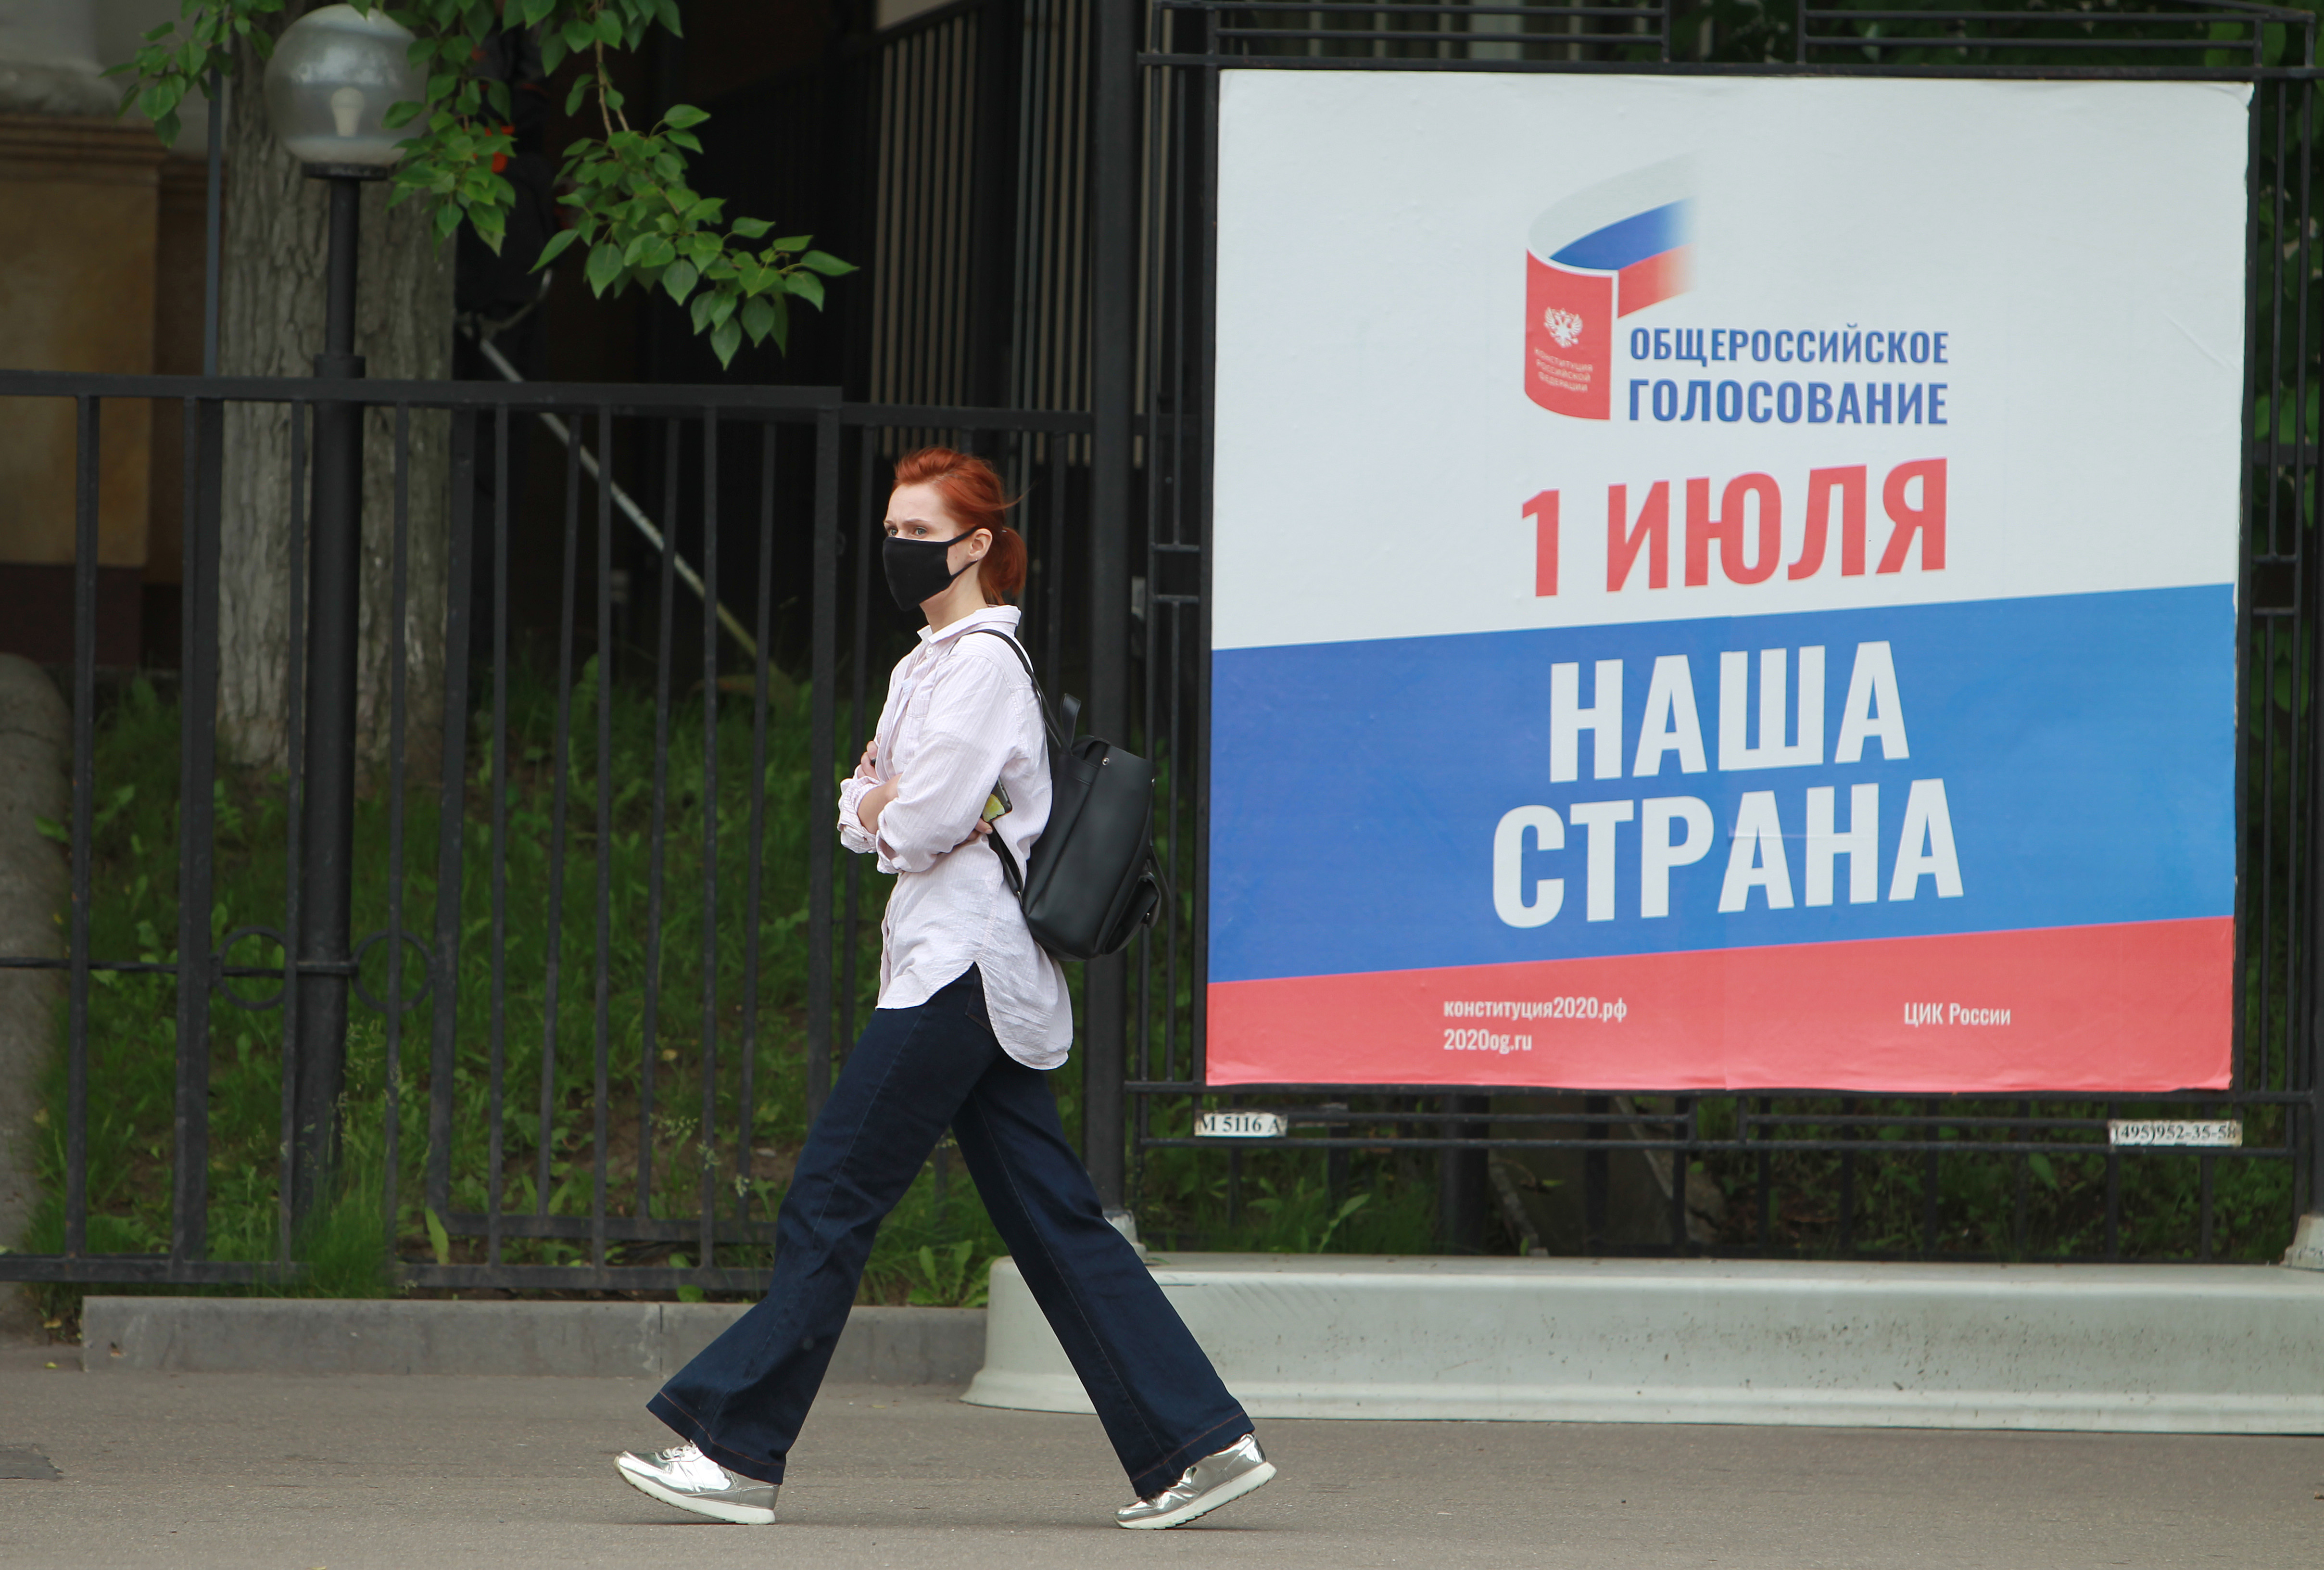 Соблюдение санитарных норм контролируют на участках для голосования. Фото: Наталия Нечаева, "Вечерняя Москва"